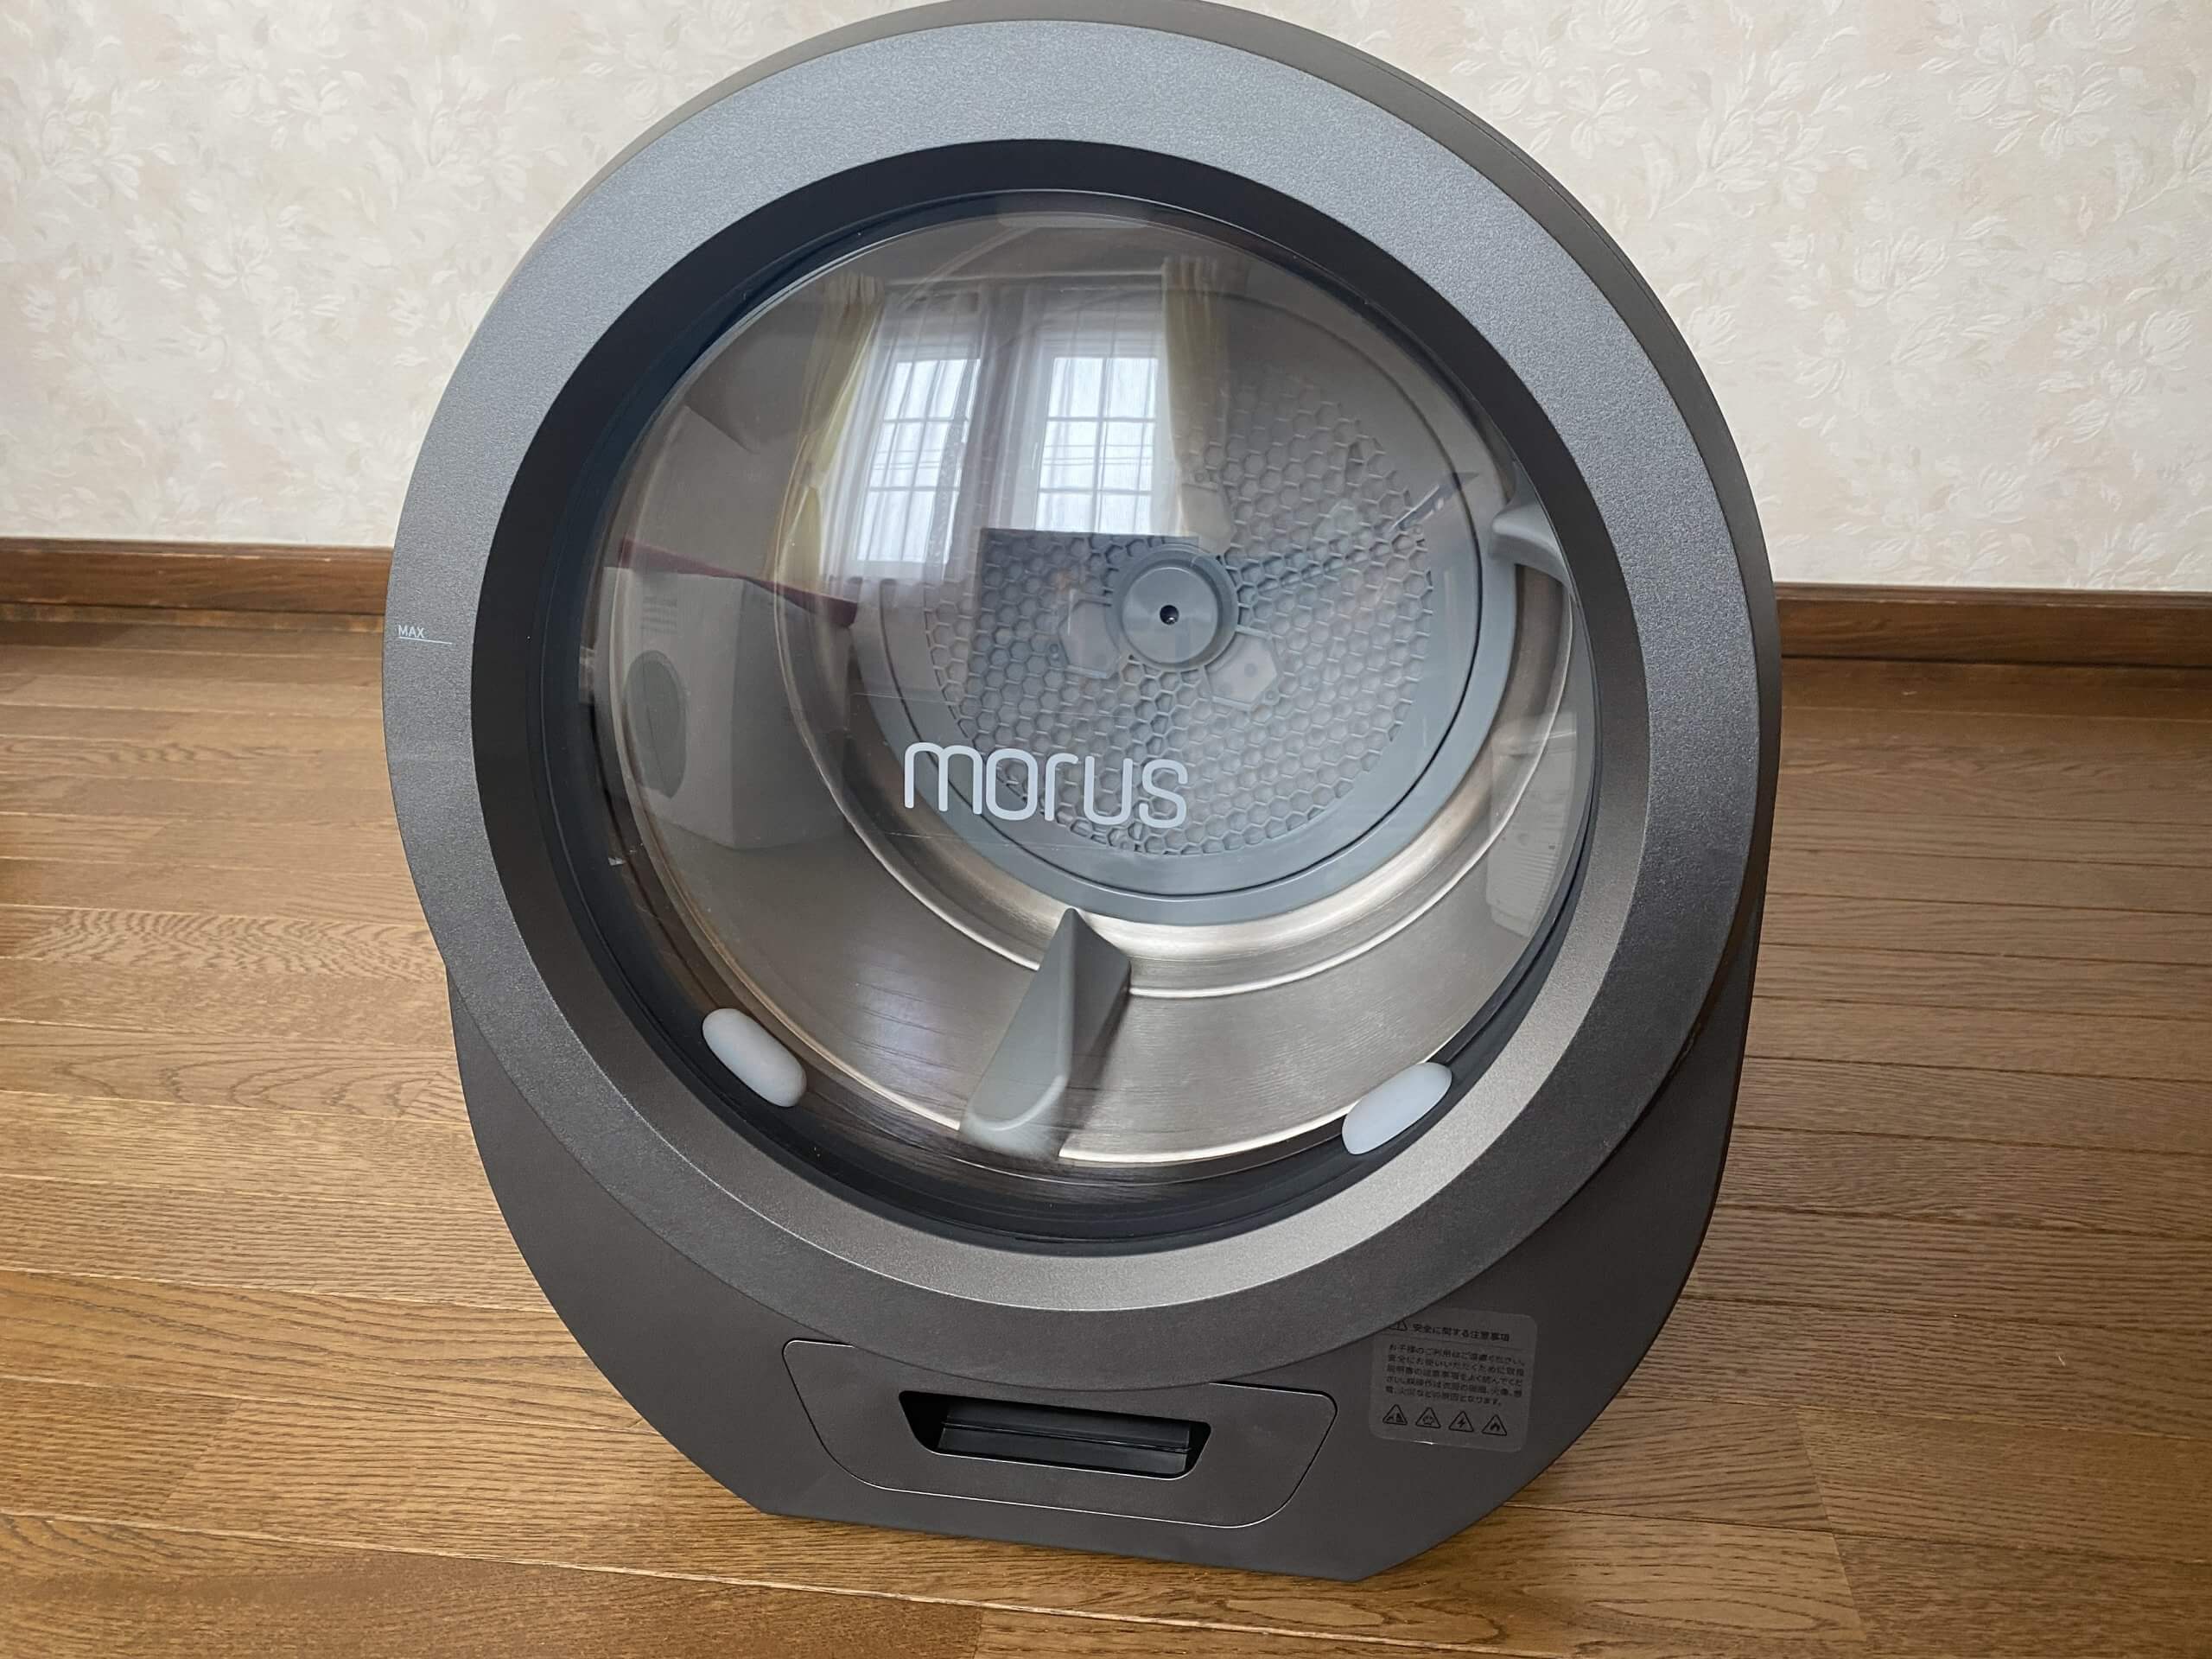 小型乾燥機「Morus Zero」は使えない!?実際に使用した感想やメリット